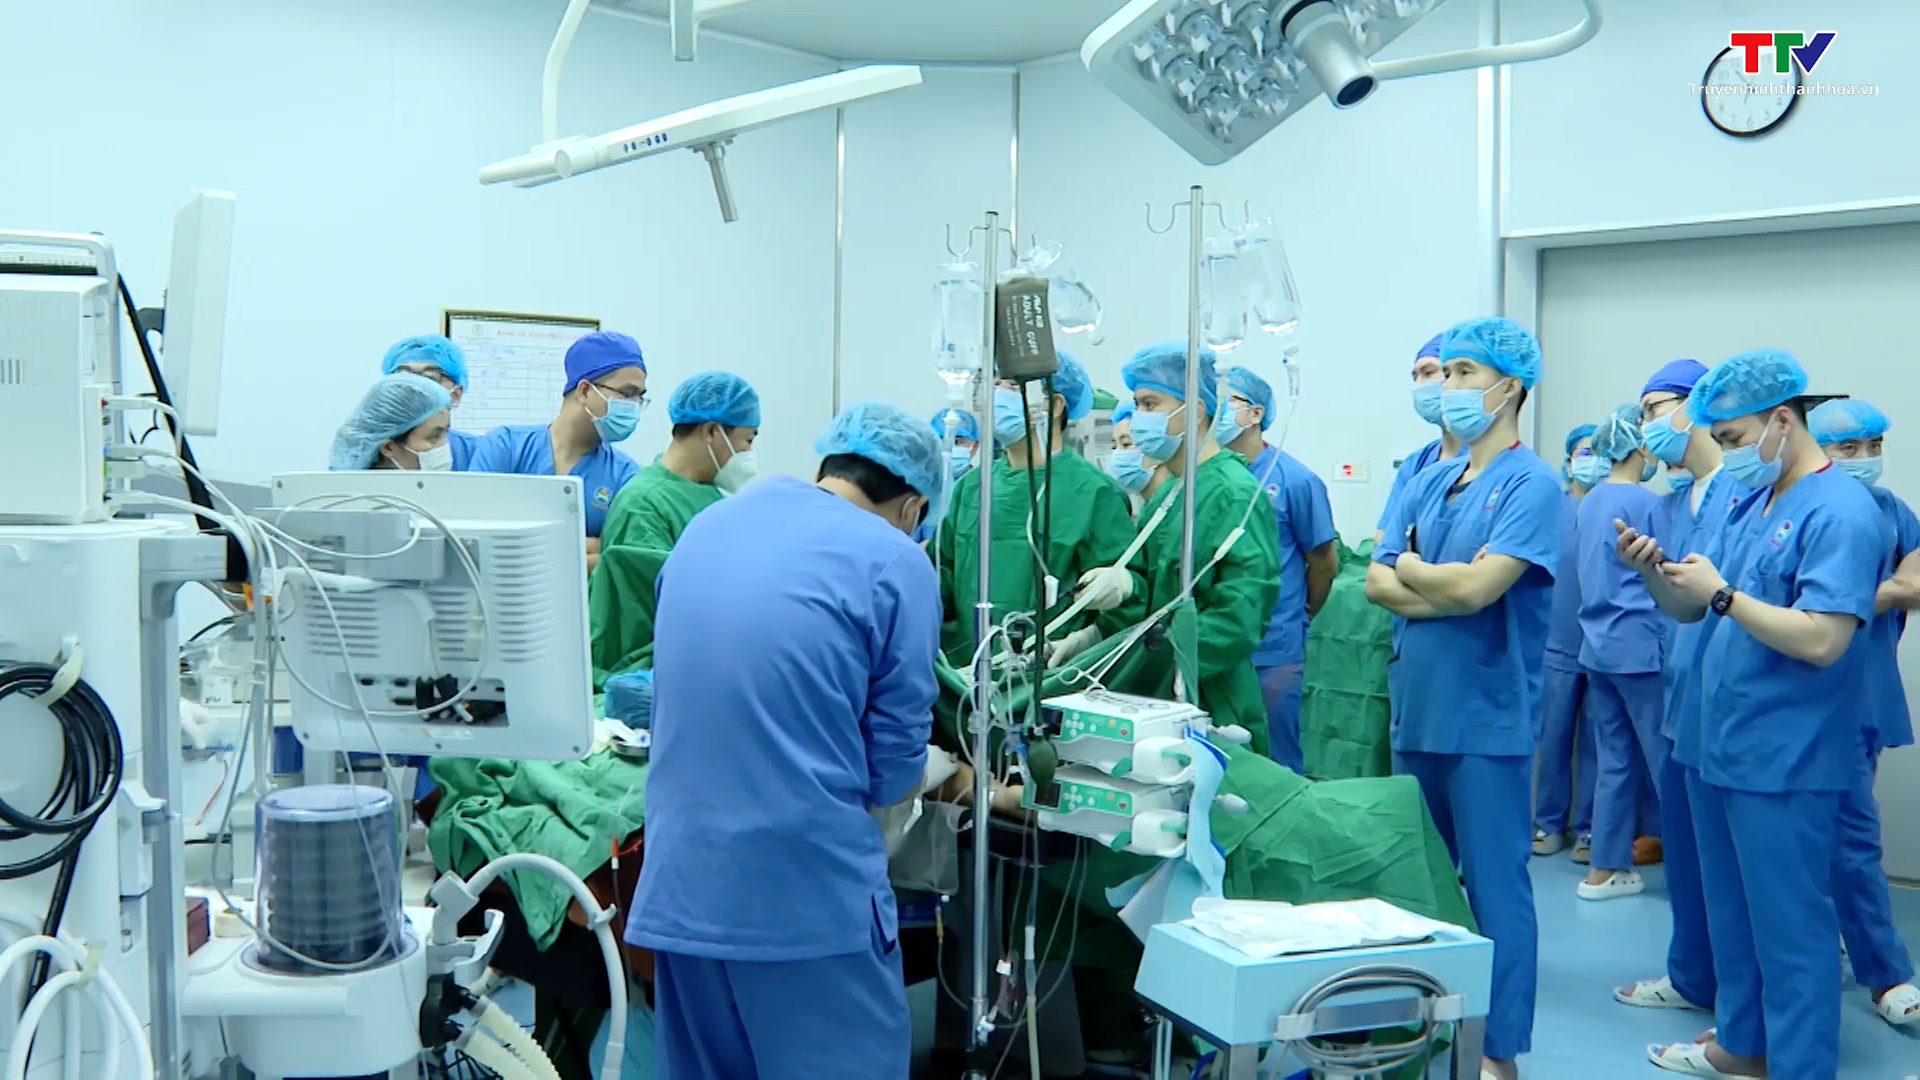 Bệnh viện Ung Bướu tỉnh Thanh Hoá tiếp tục triển khai kỹ thuật cắt gan trên bệnh nhân ung thư - Ảnh 2.